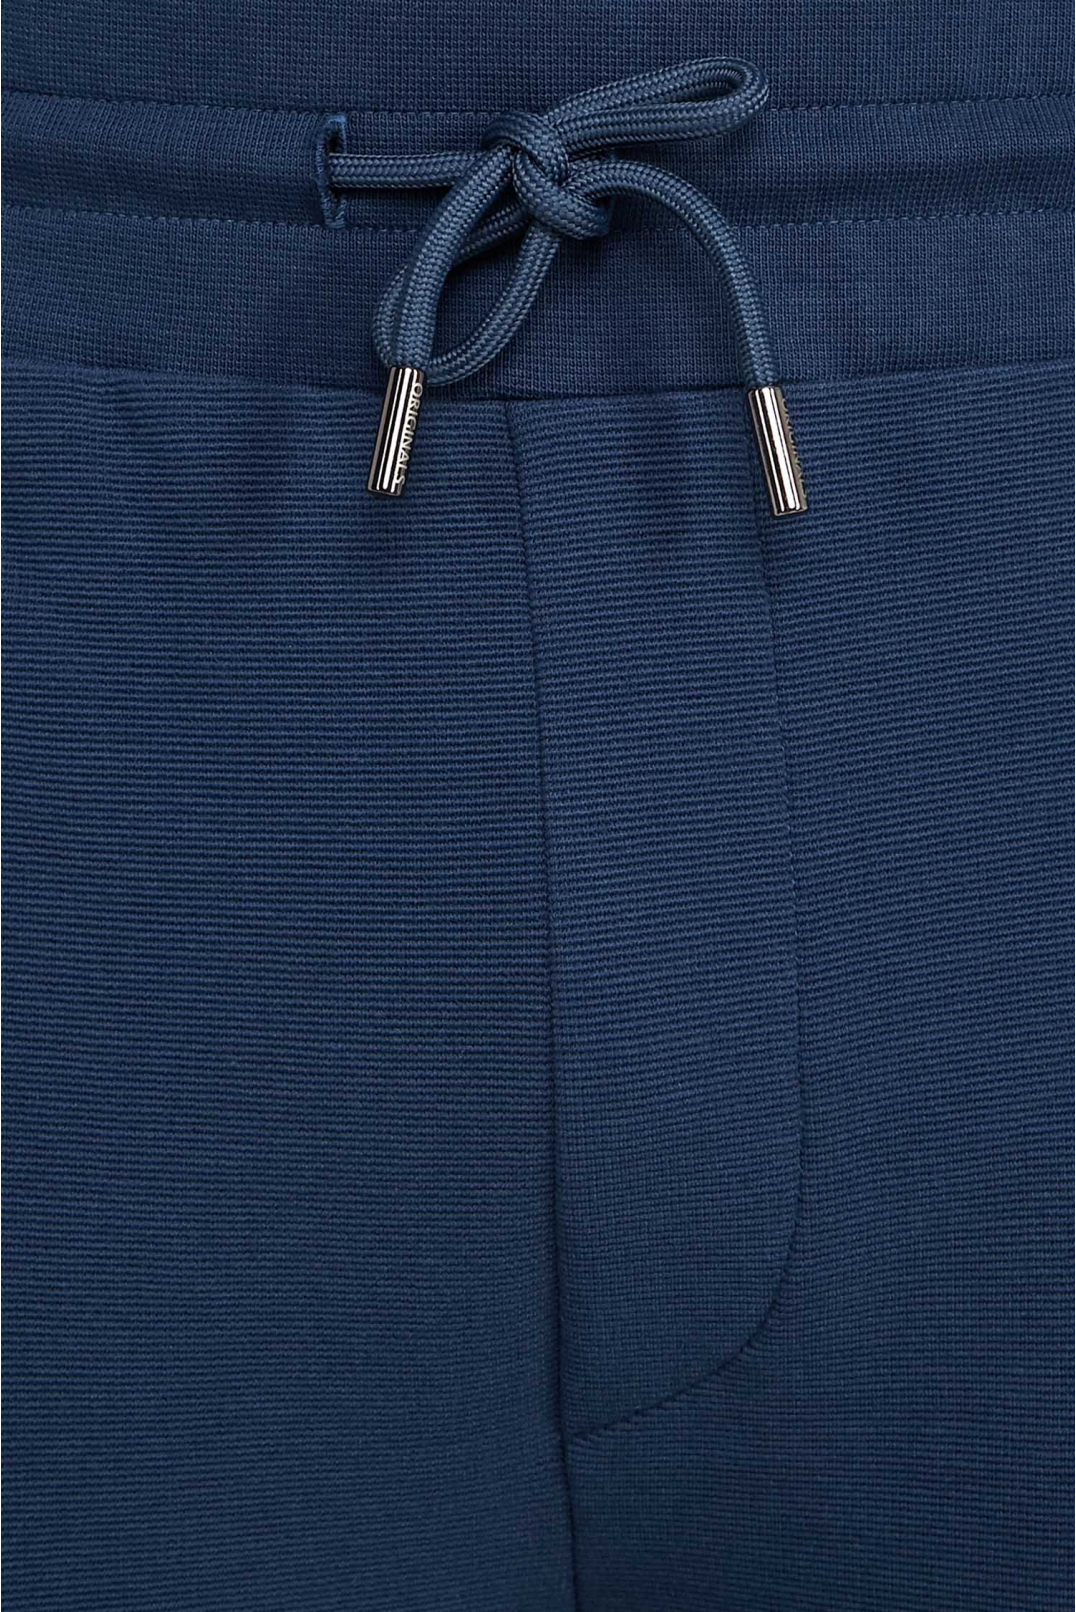 Чоловічий темно-синій спортивний костюм (кофта, штани) - 3